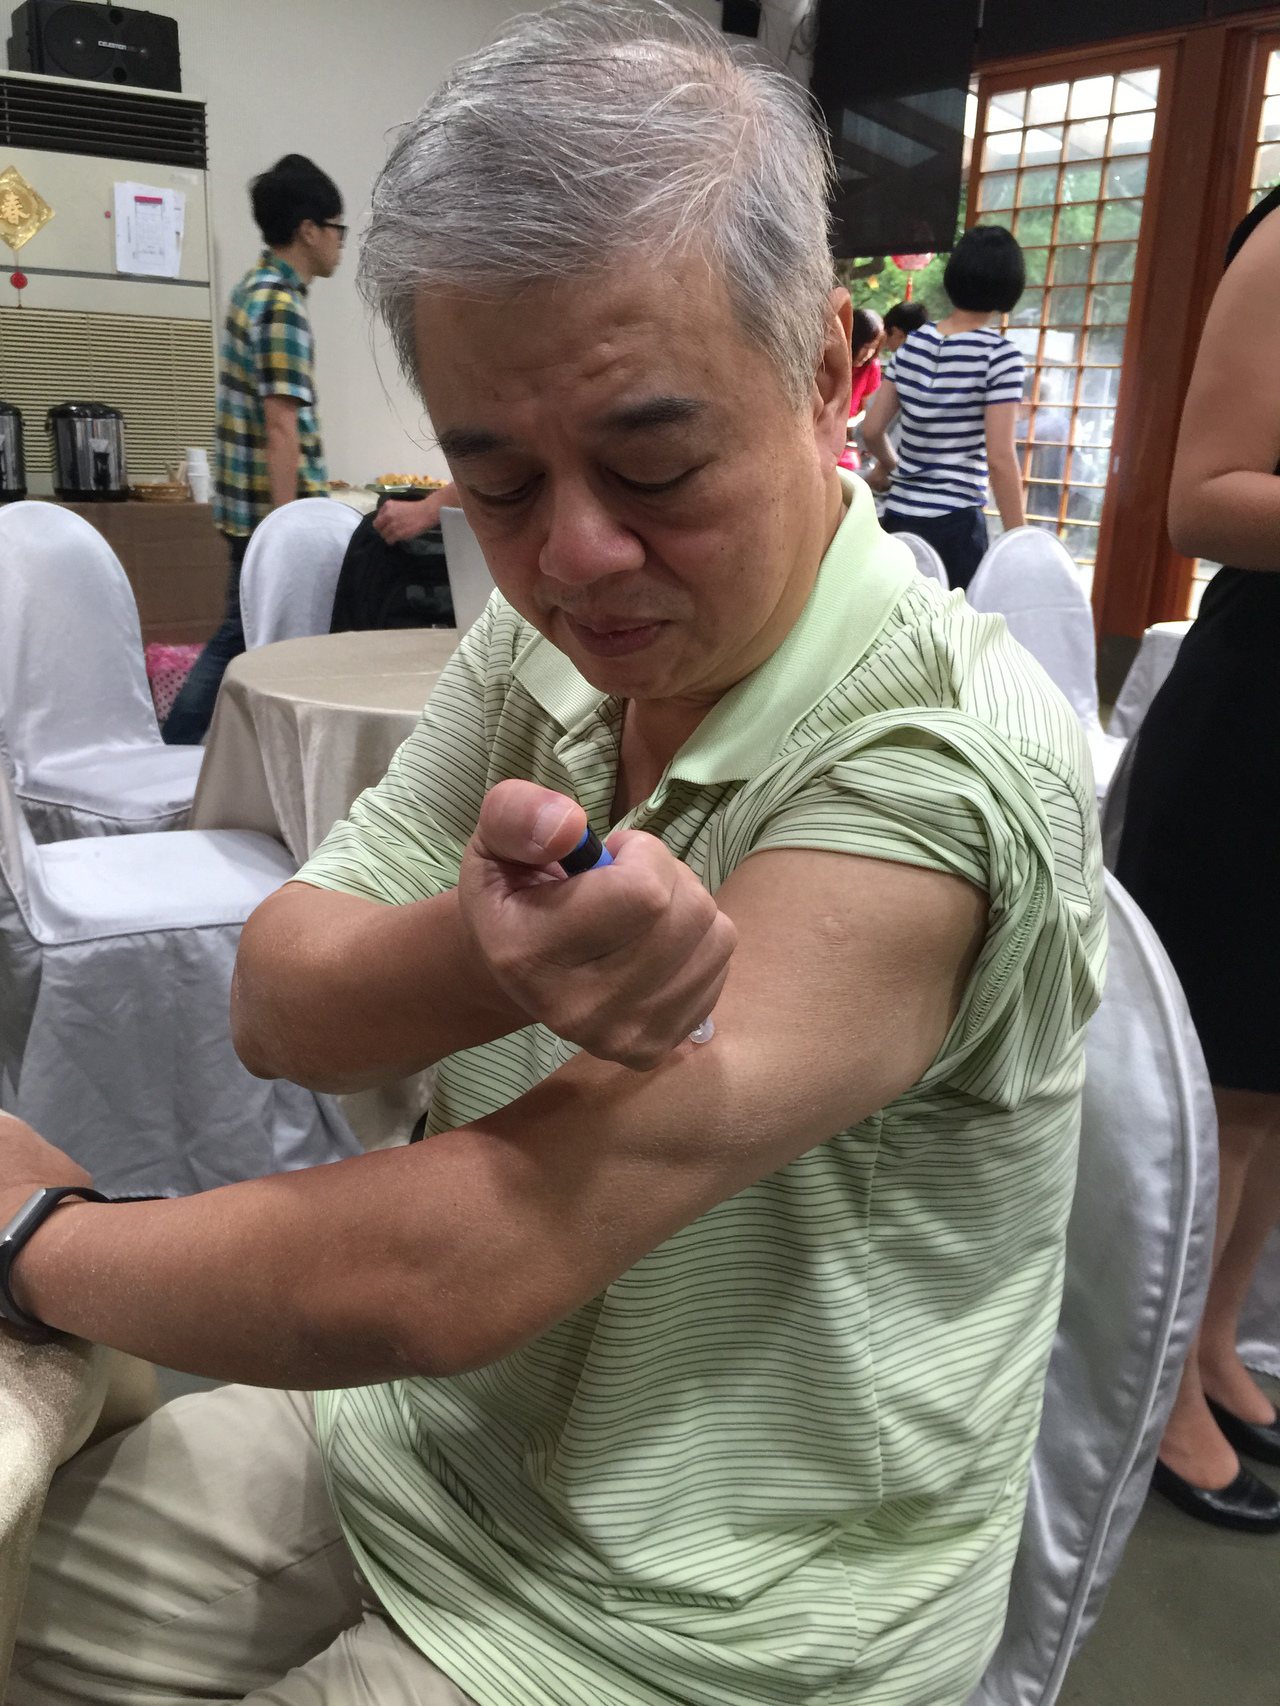 62歲的糖尿病友張先生，一天會定時各施打一劑腸泌素和胰島素針劑控制血糖。

記者黃安琪攝影